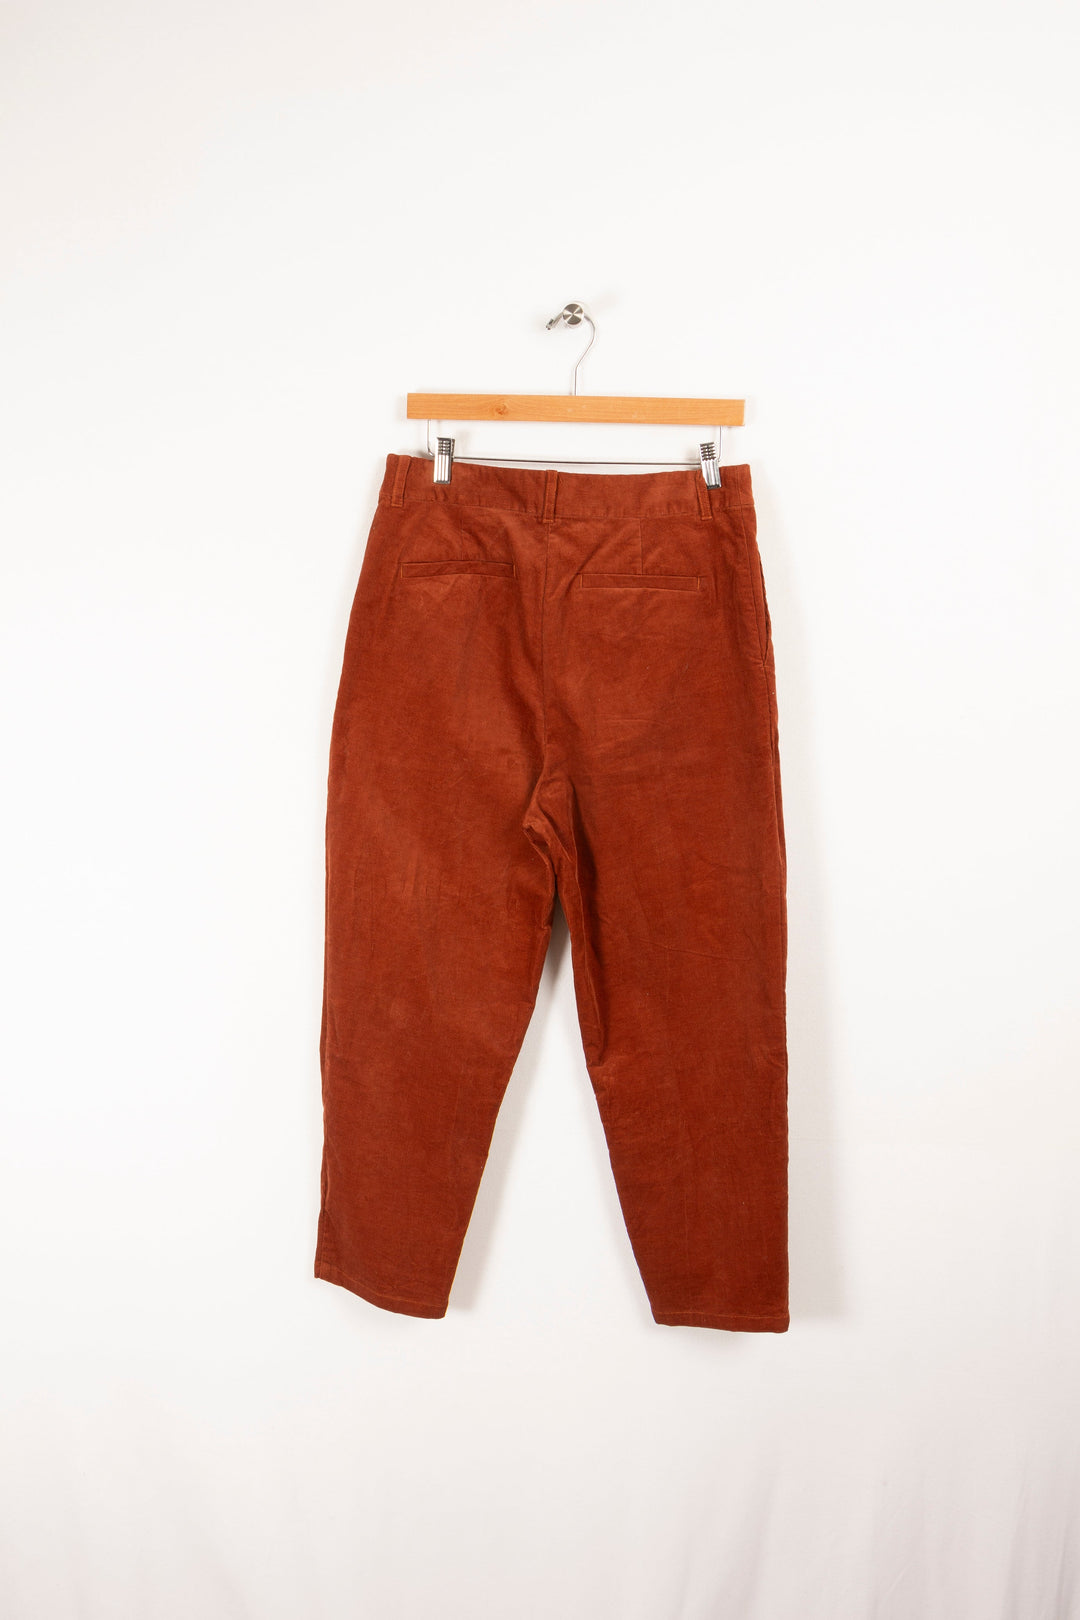 Brown pants - Size L/40